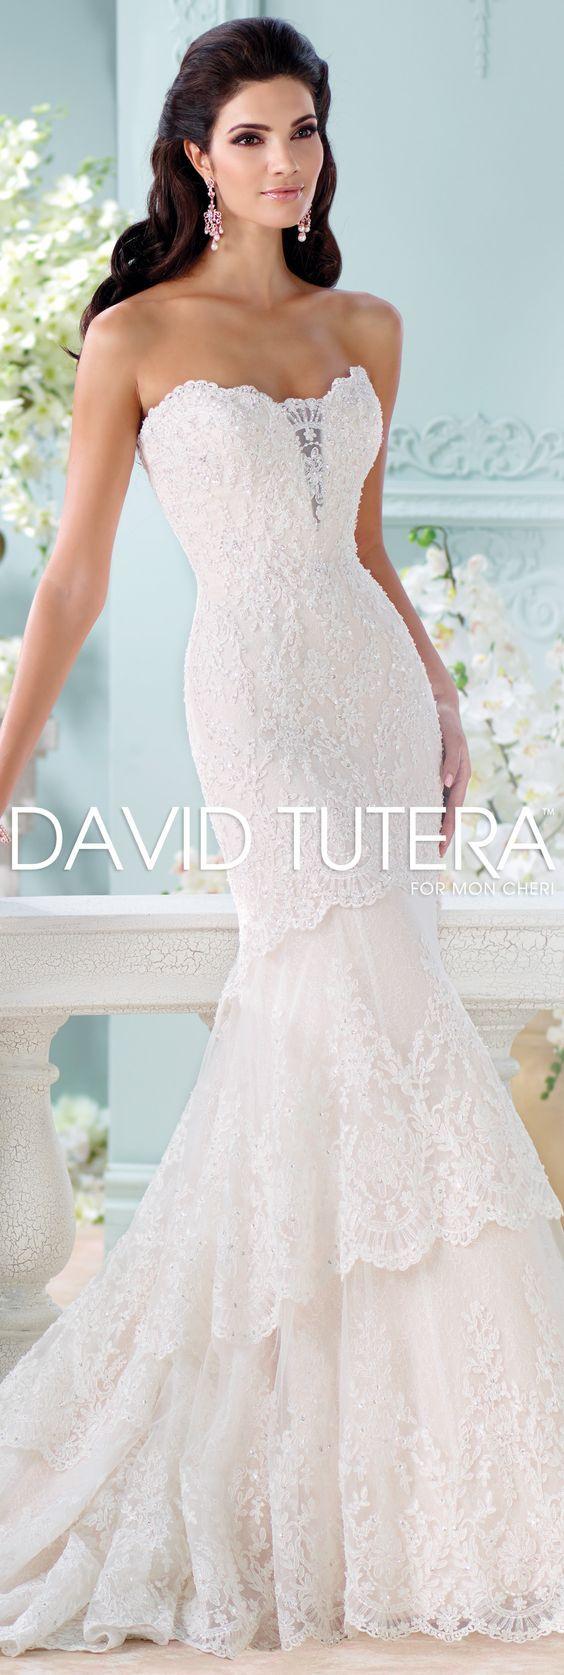 Wedding - Gorgeous Wedding Dresses By David Tutera For Mon Cheri